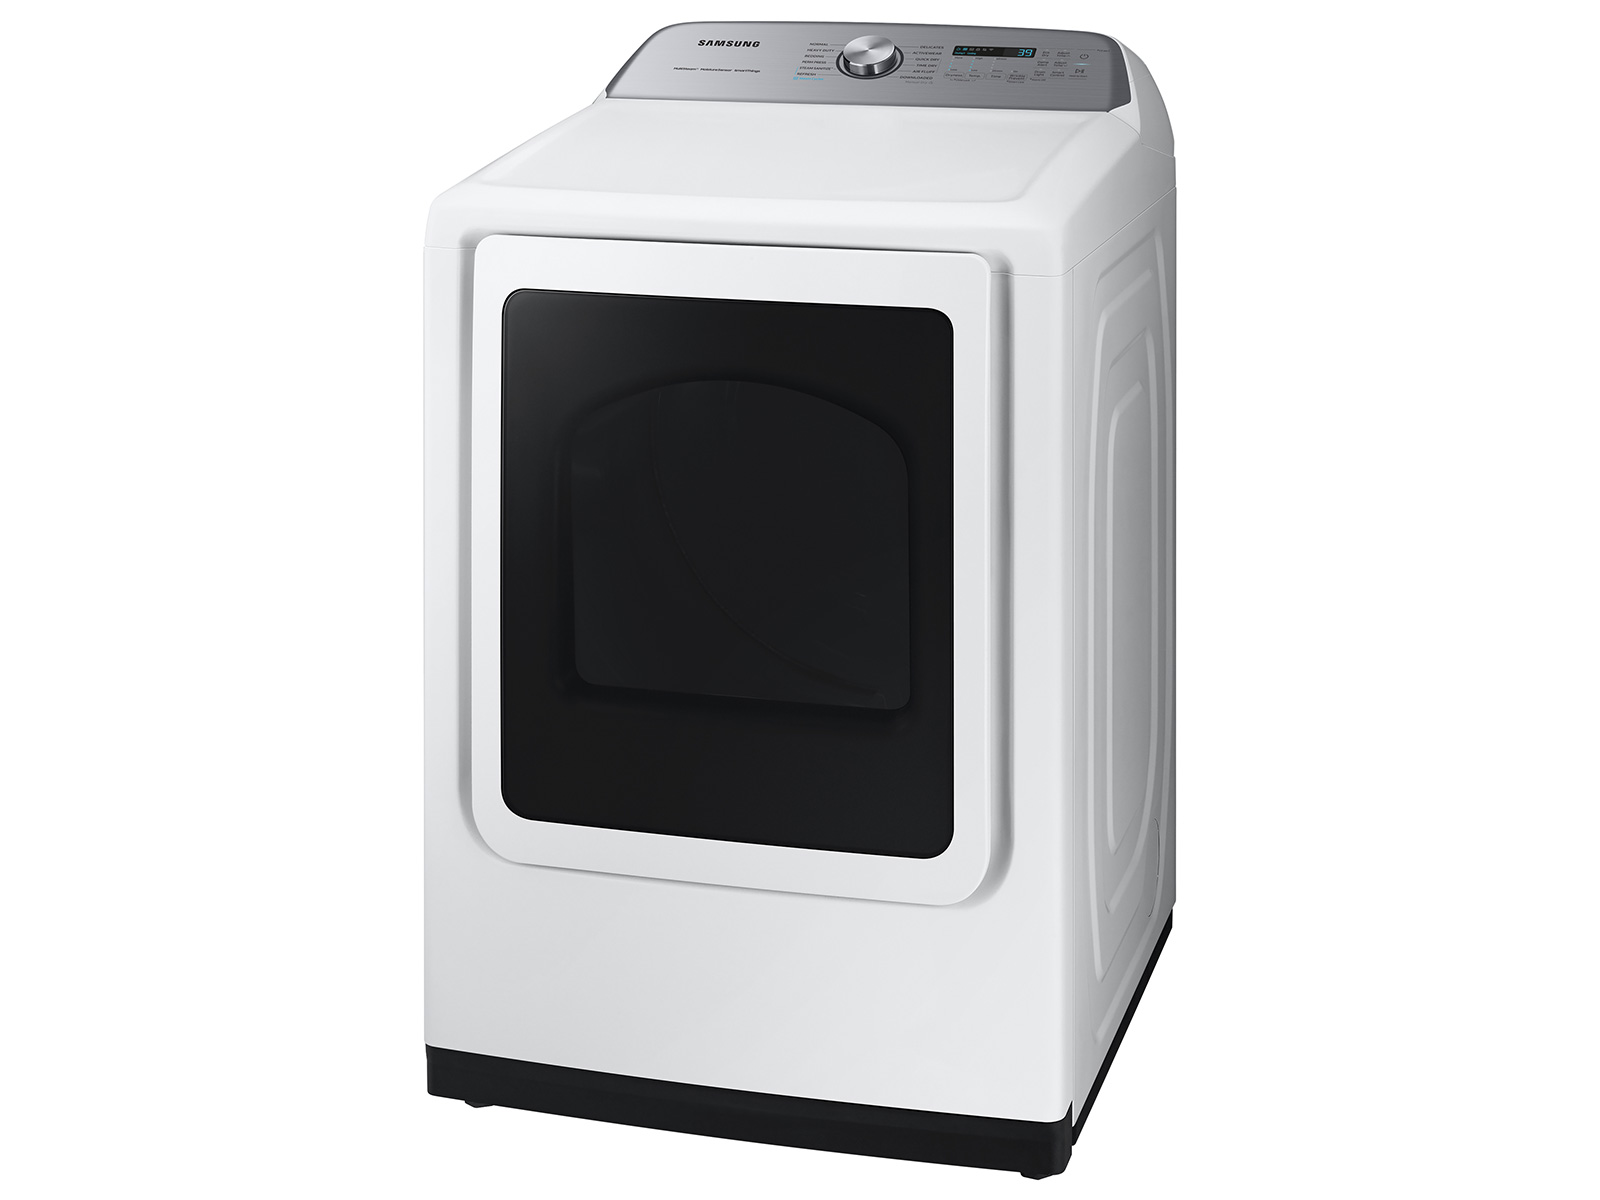 New in Box! Kenmore Gas Dryer 7.4 cu. ft Drop Down Door, White